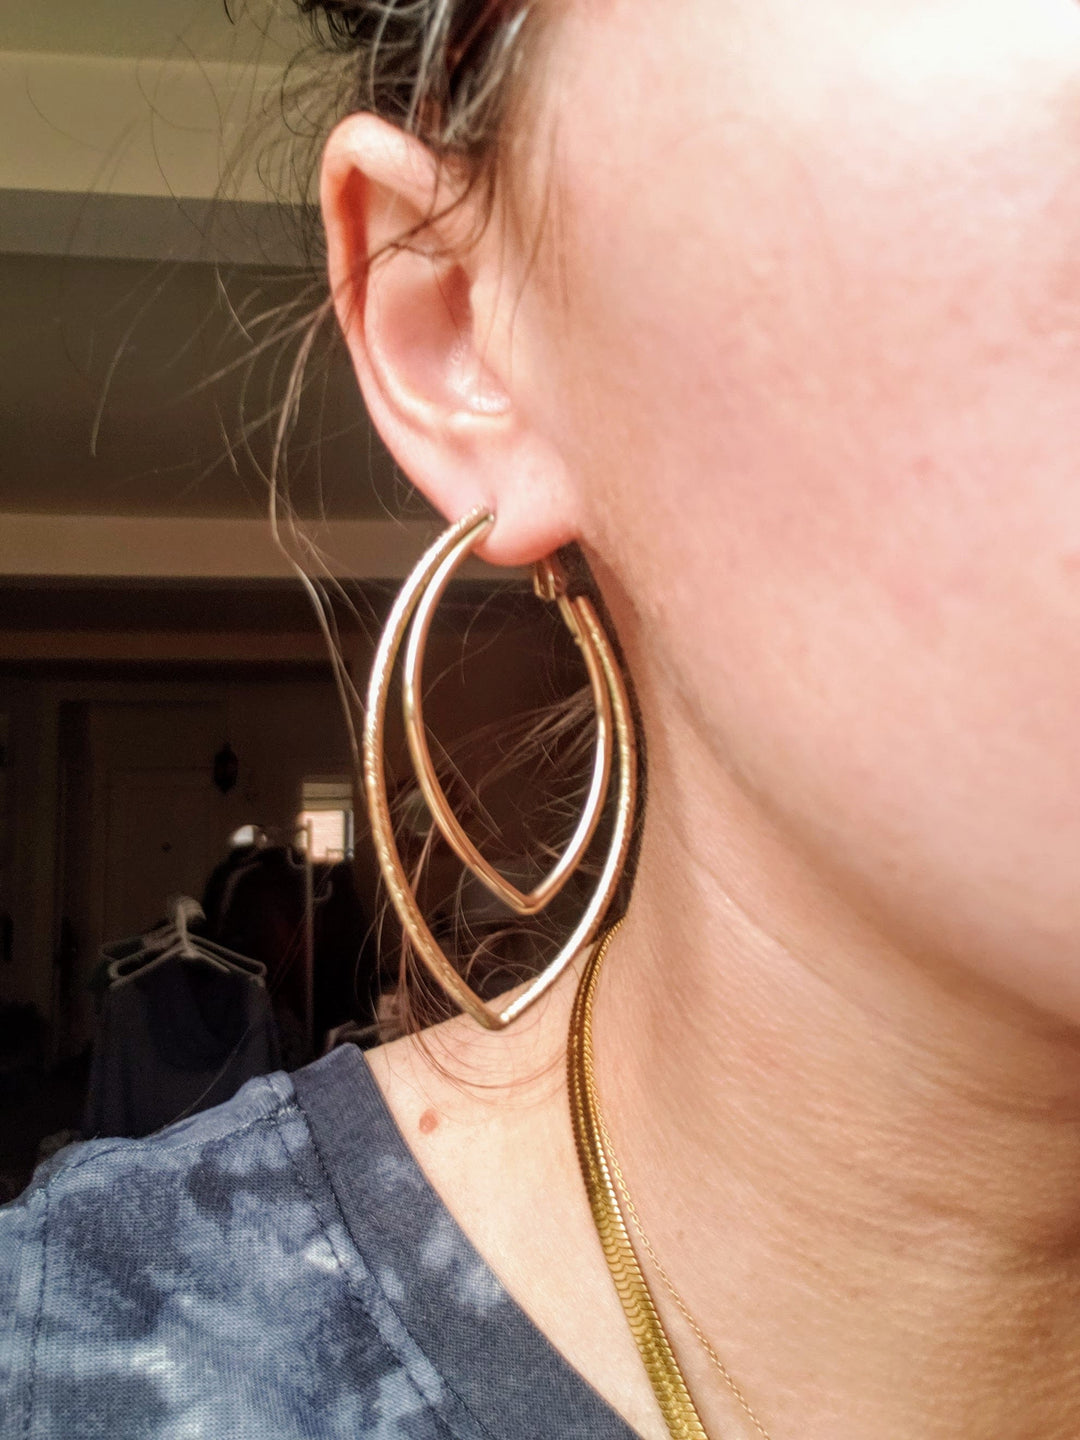 marquise earrings